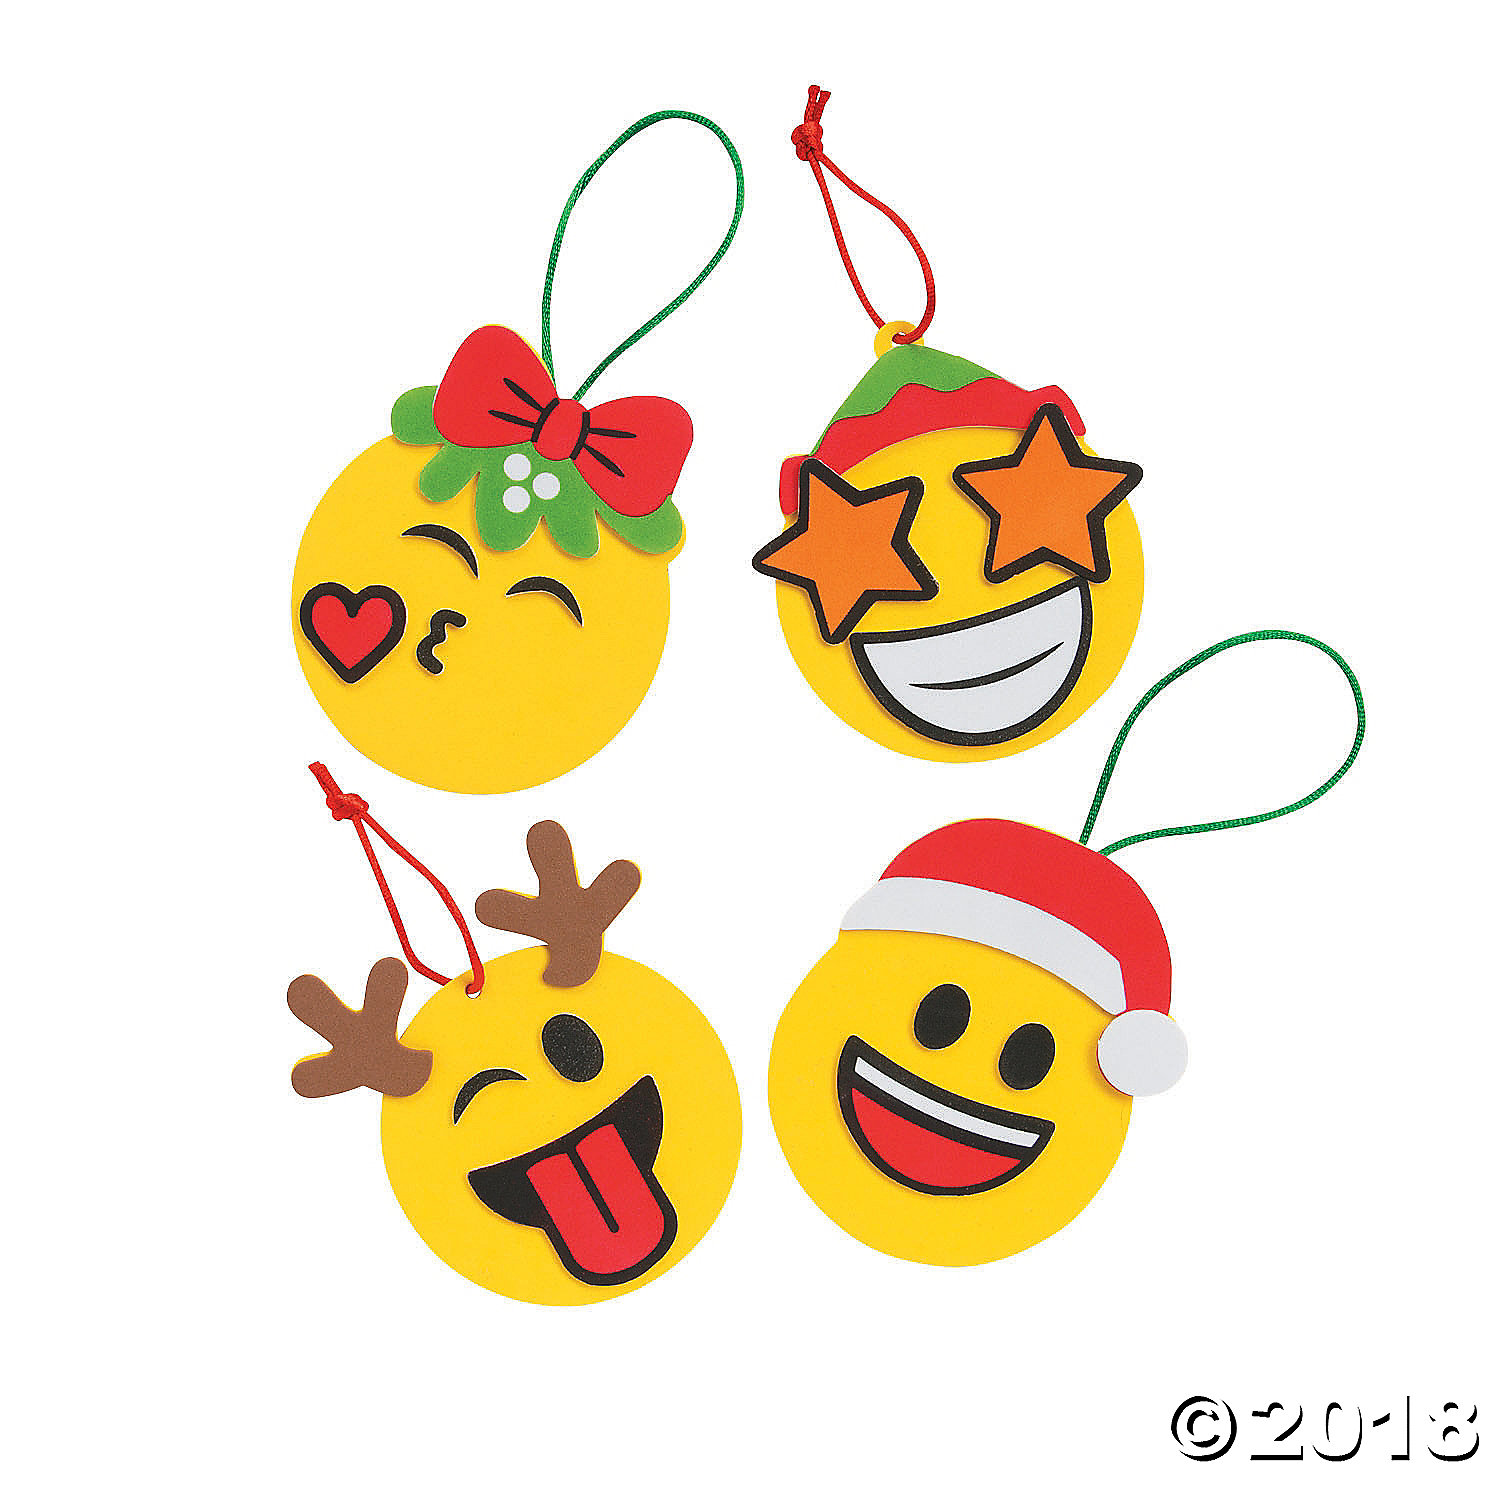 25 In PK Smile Smiley Face Emoji Design 11.5" Tall Cellophane Party Bags Cello